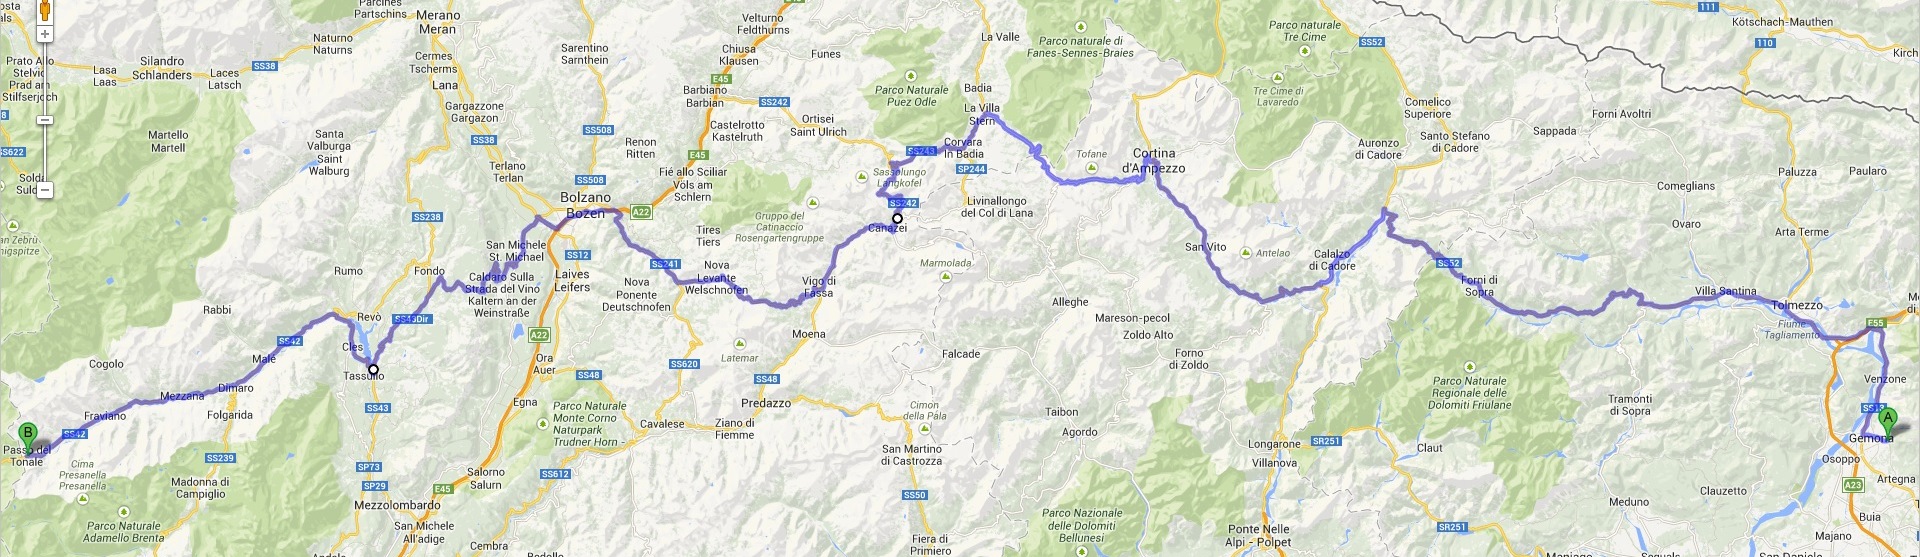 12. Gemona del Friuli (I) - Passo del Tonale (I).jpg